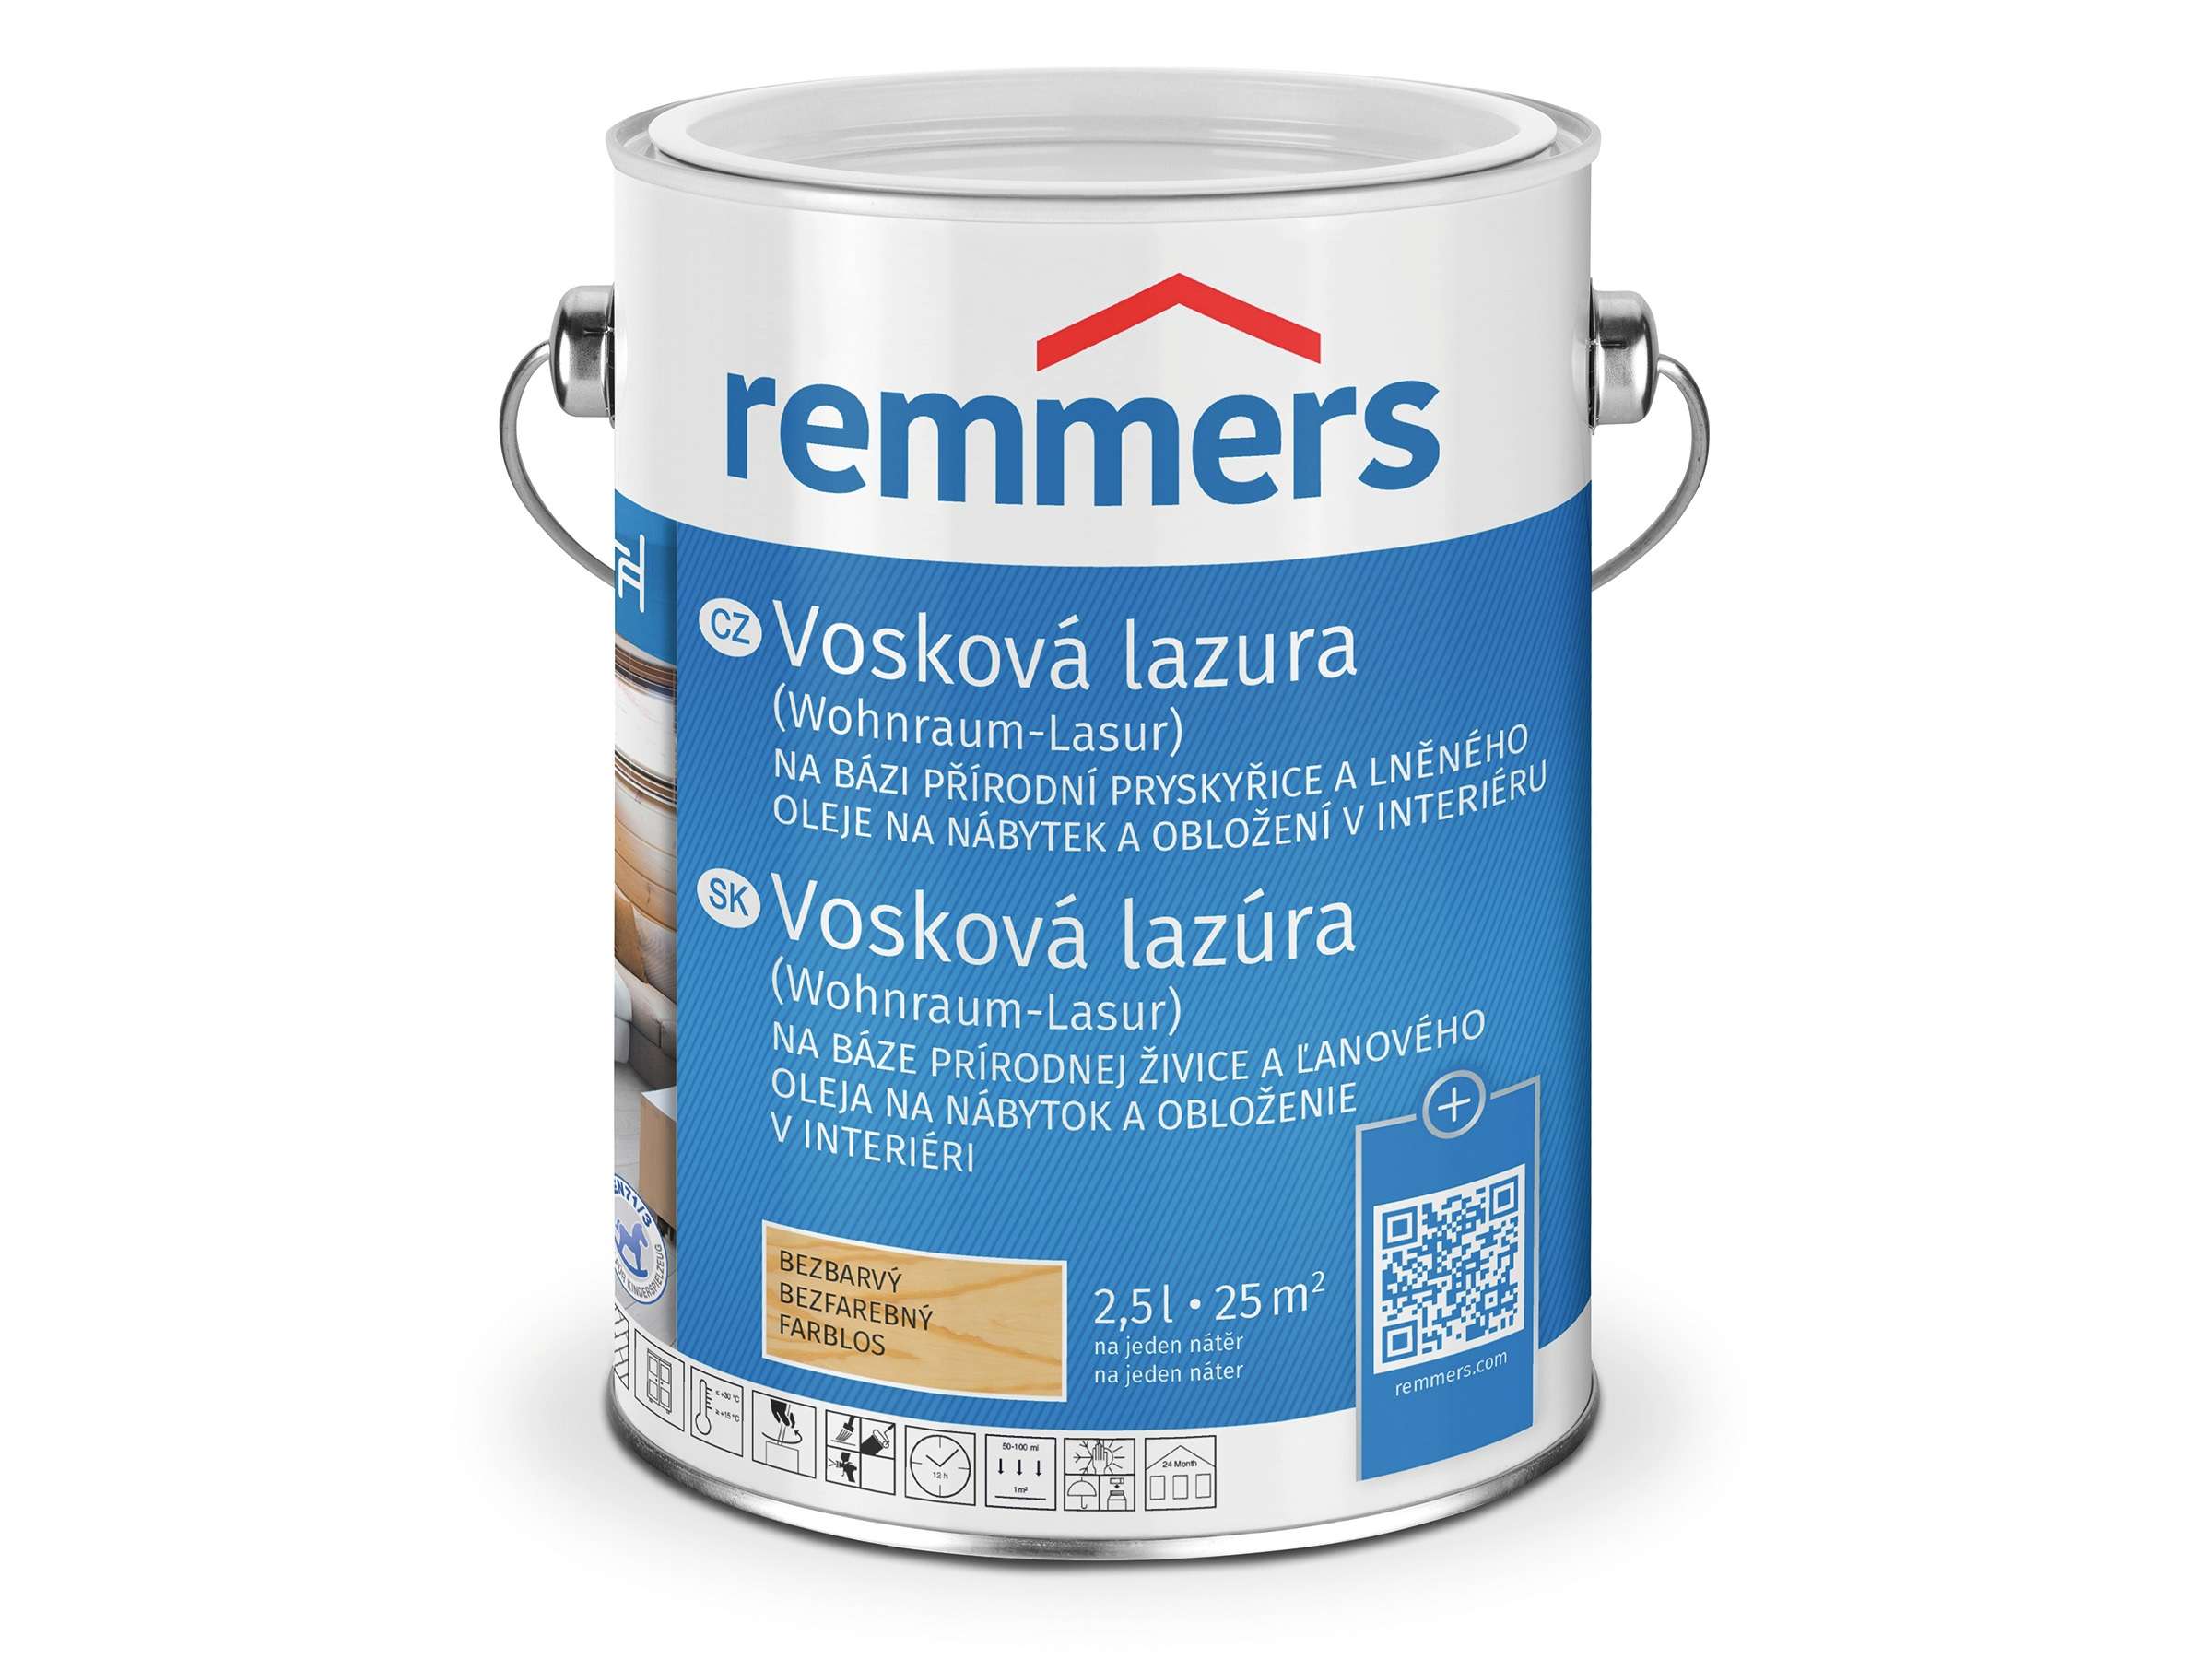 Remmers Vosková lazura * Wohnraum Lasur 1